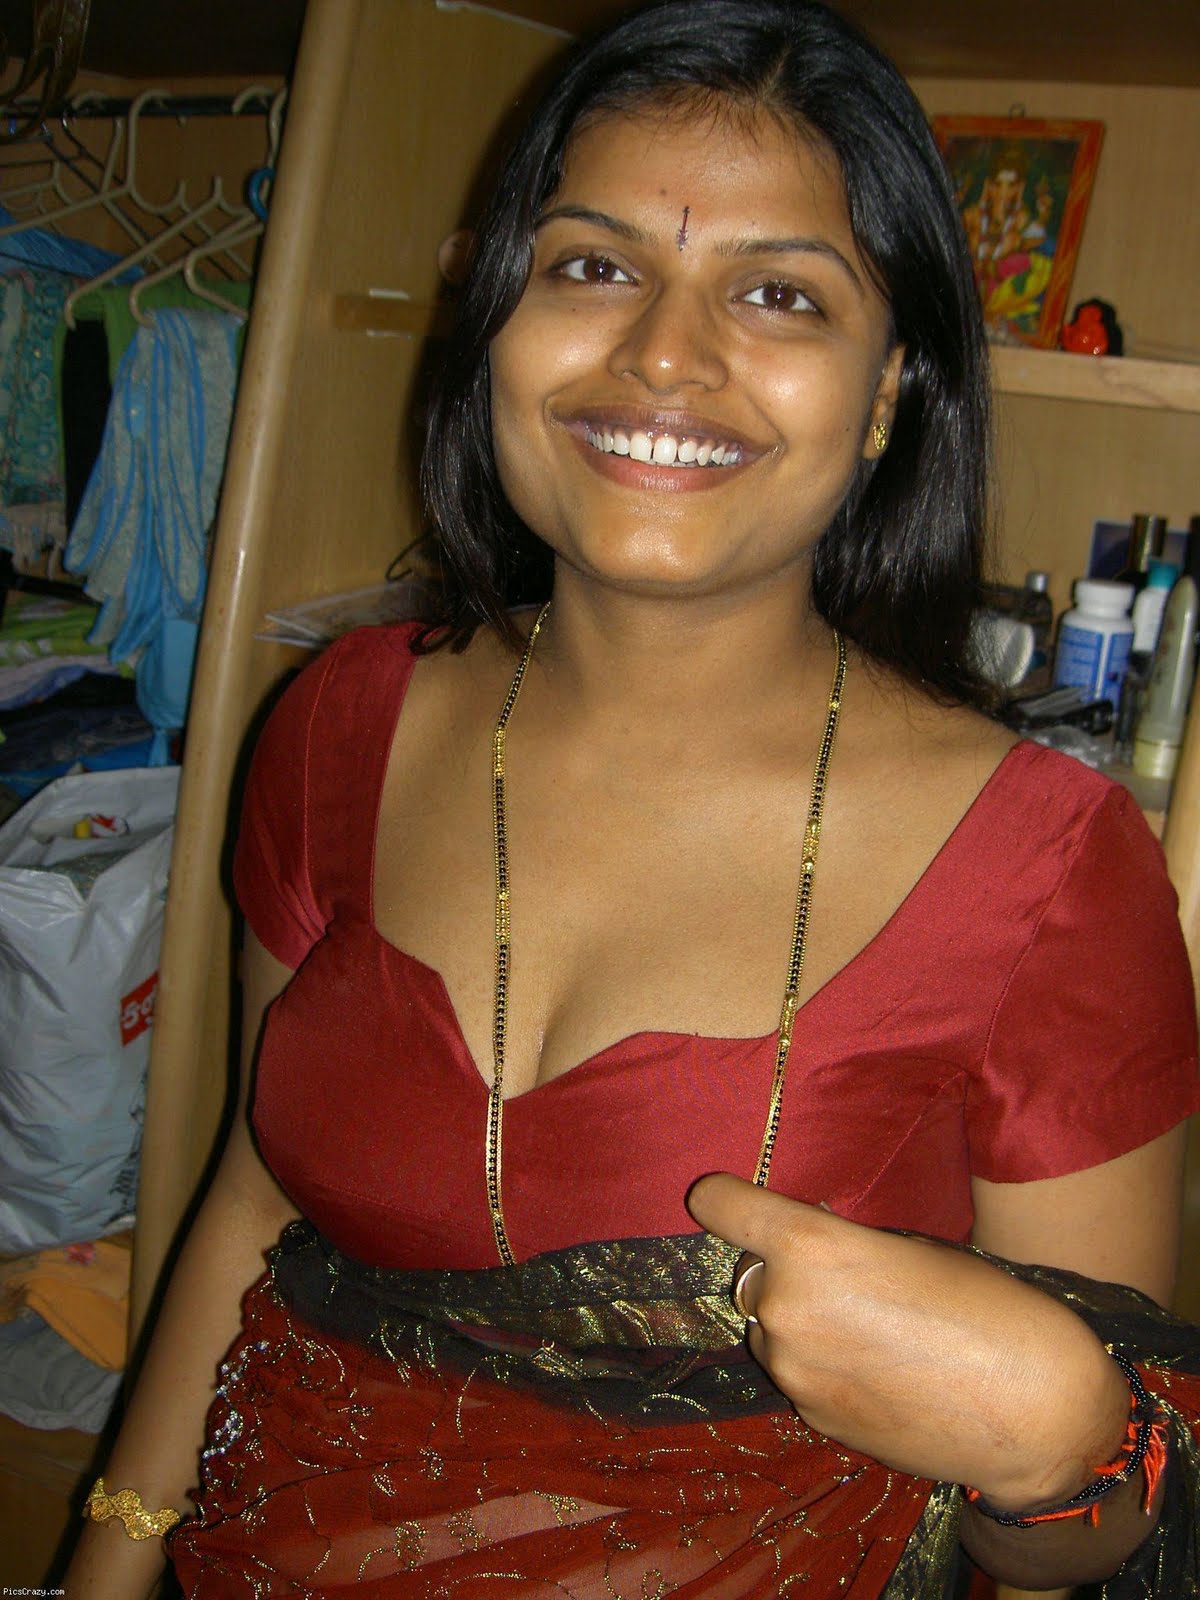 DESHI BANGALI GIRL NUDE 340 PICS MEGA COLLECTION - Desi 